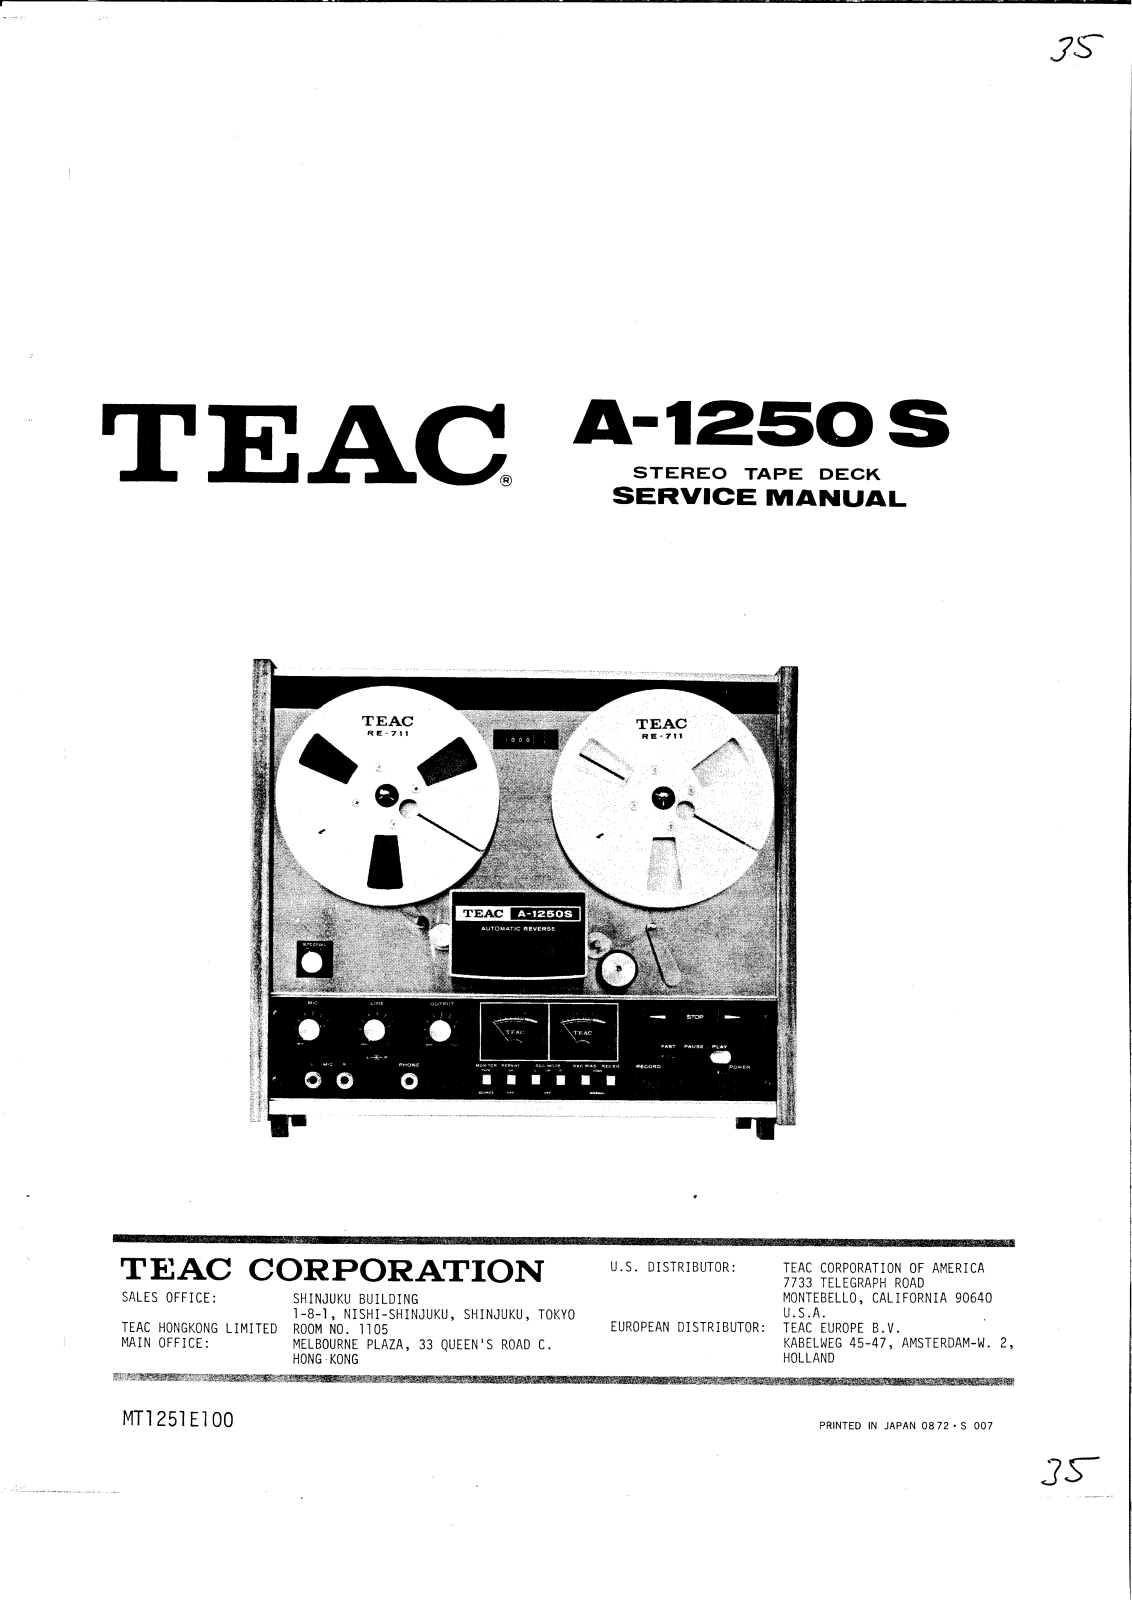 Teac A-1250-S Service Manual